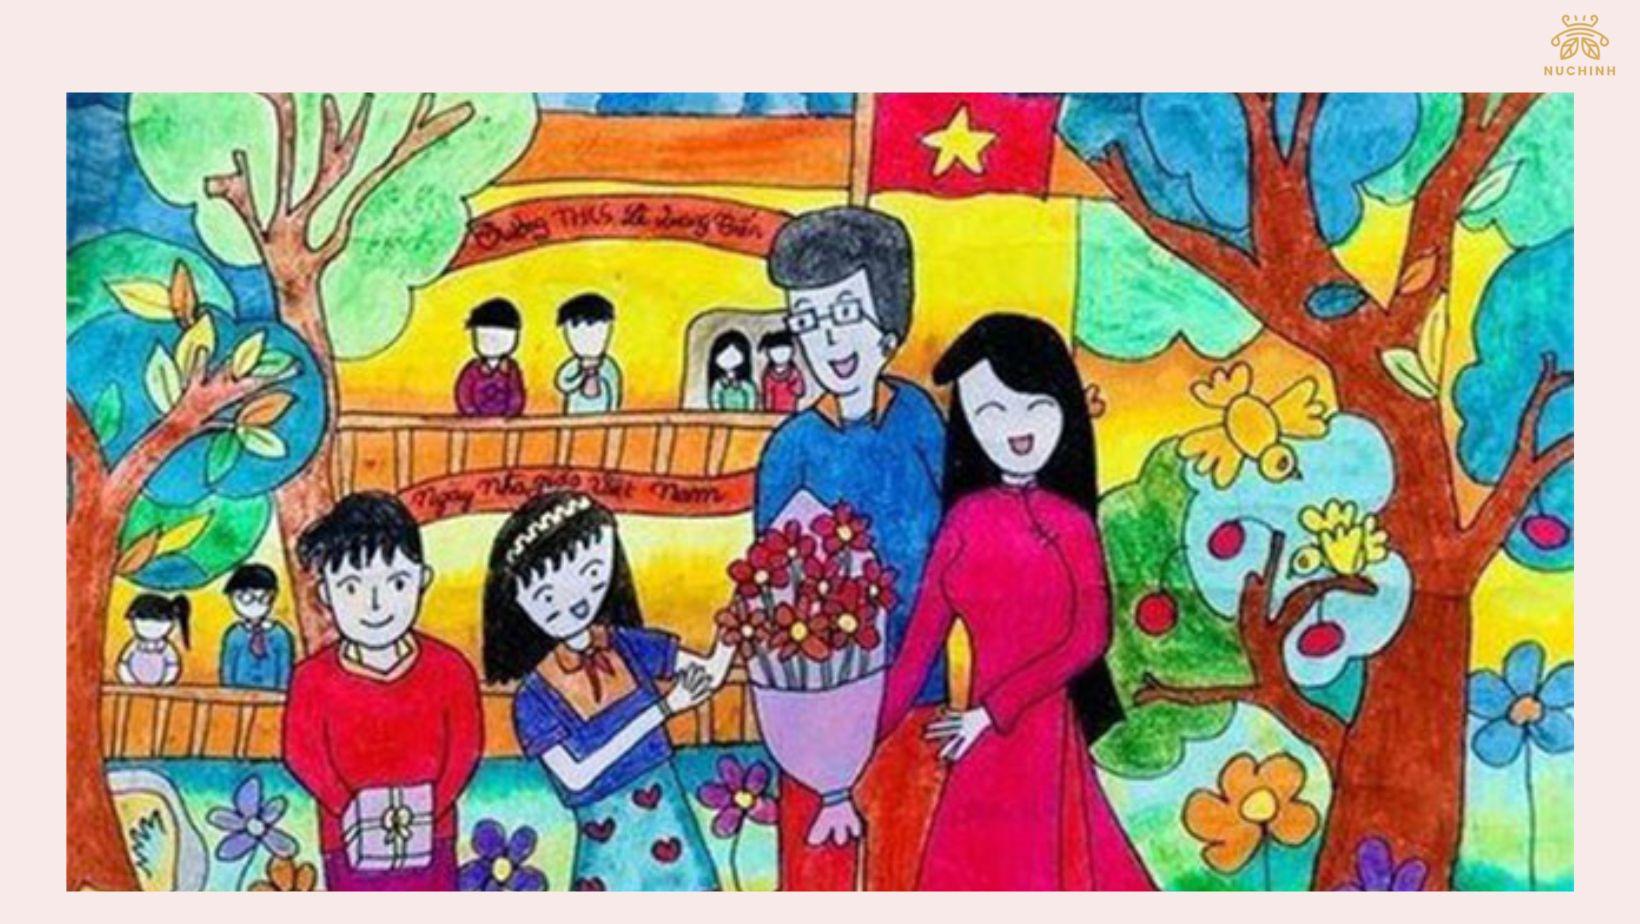 Tranh vẽ đề tài 2011 tranh ngày nhà giáo Việt Nam đẹp và ý nghĩa nhất